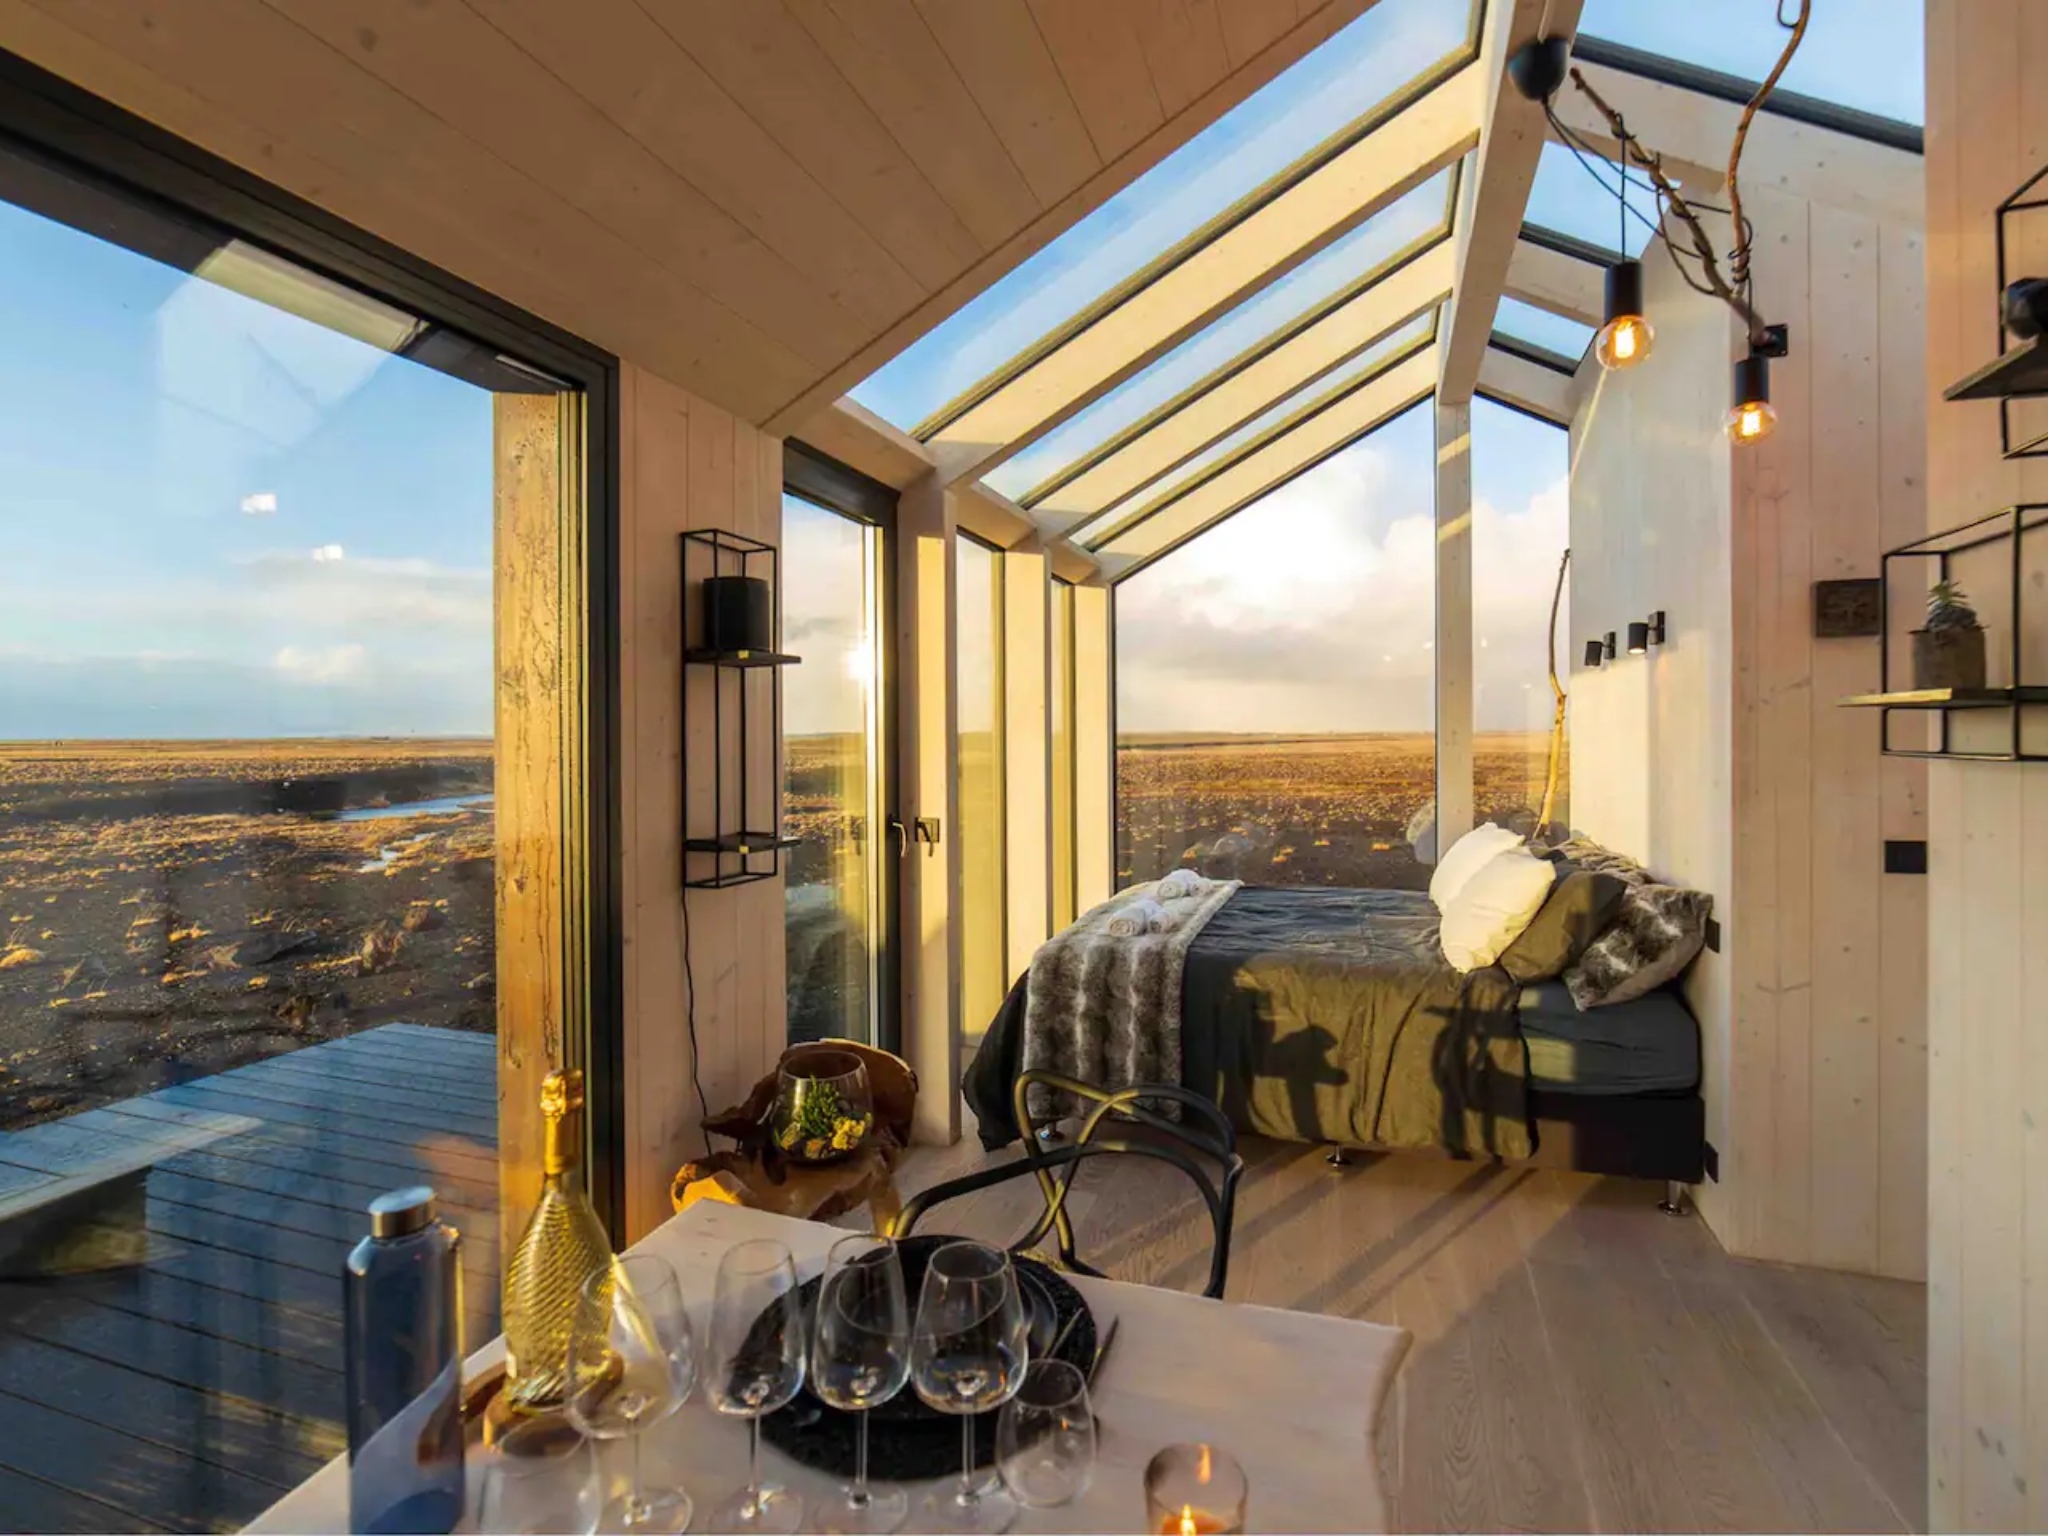 Bạn có thể nhìn thấy Cực quang từ trên giường của mình tại Airbnb này ở Iceland - 3